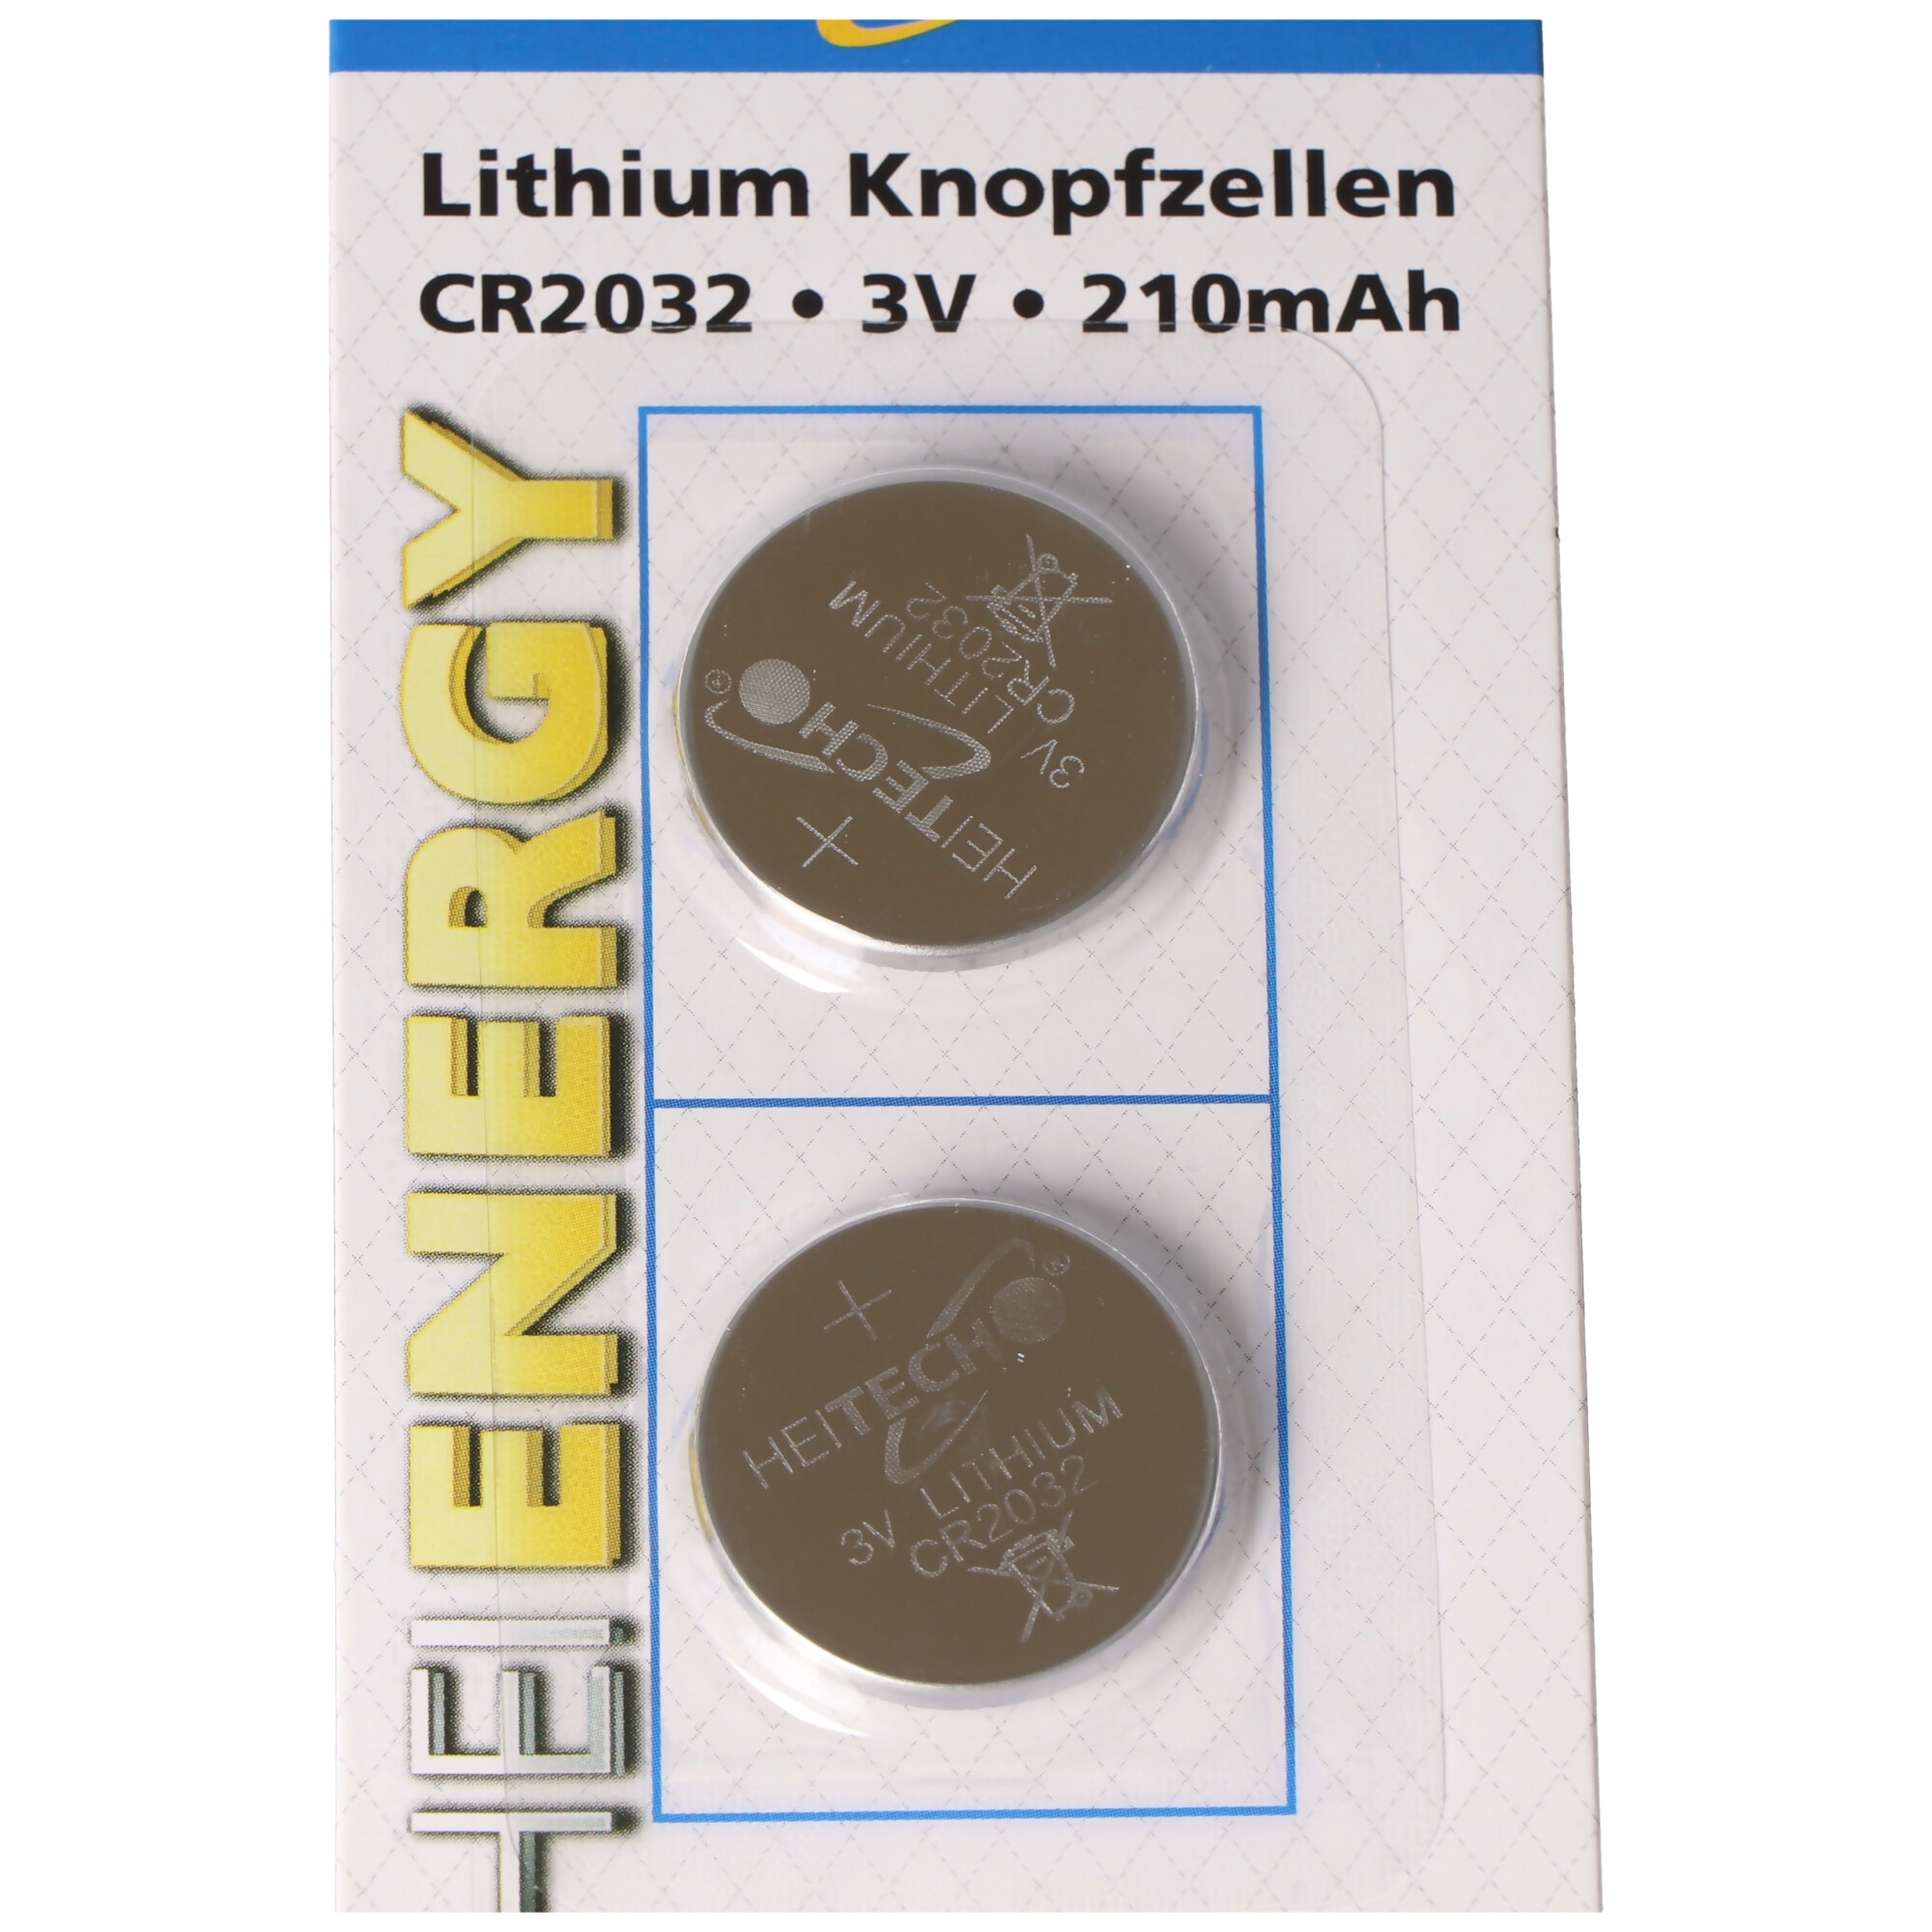 CR2032 Lithium Batterie im praktischen 2er-Set, Lithium Knopfzelle CR2032, 3V